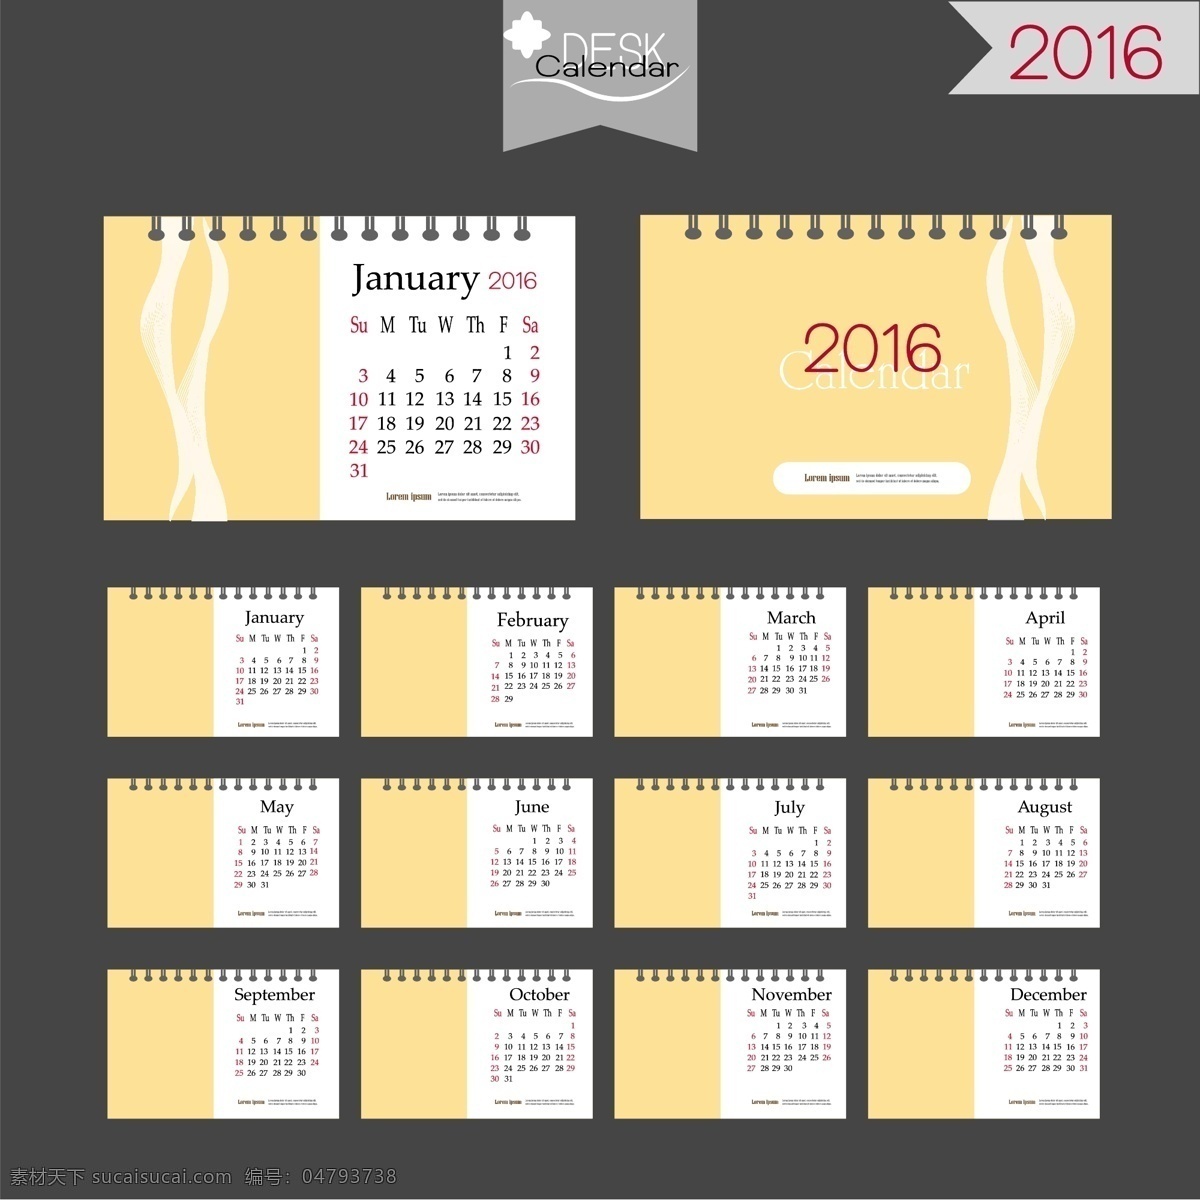 2016 猴年 日历 模板 矢量 v 54 2016年 年 日历卡 猴年日历 日历表 日历版式 日历设计 炫彩 花纹 蓝色 紫色 绿色 黄色 水果 几何 圆形 六边形 日历素材 节日素材 矢量素材 红色